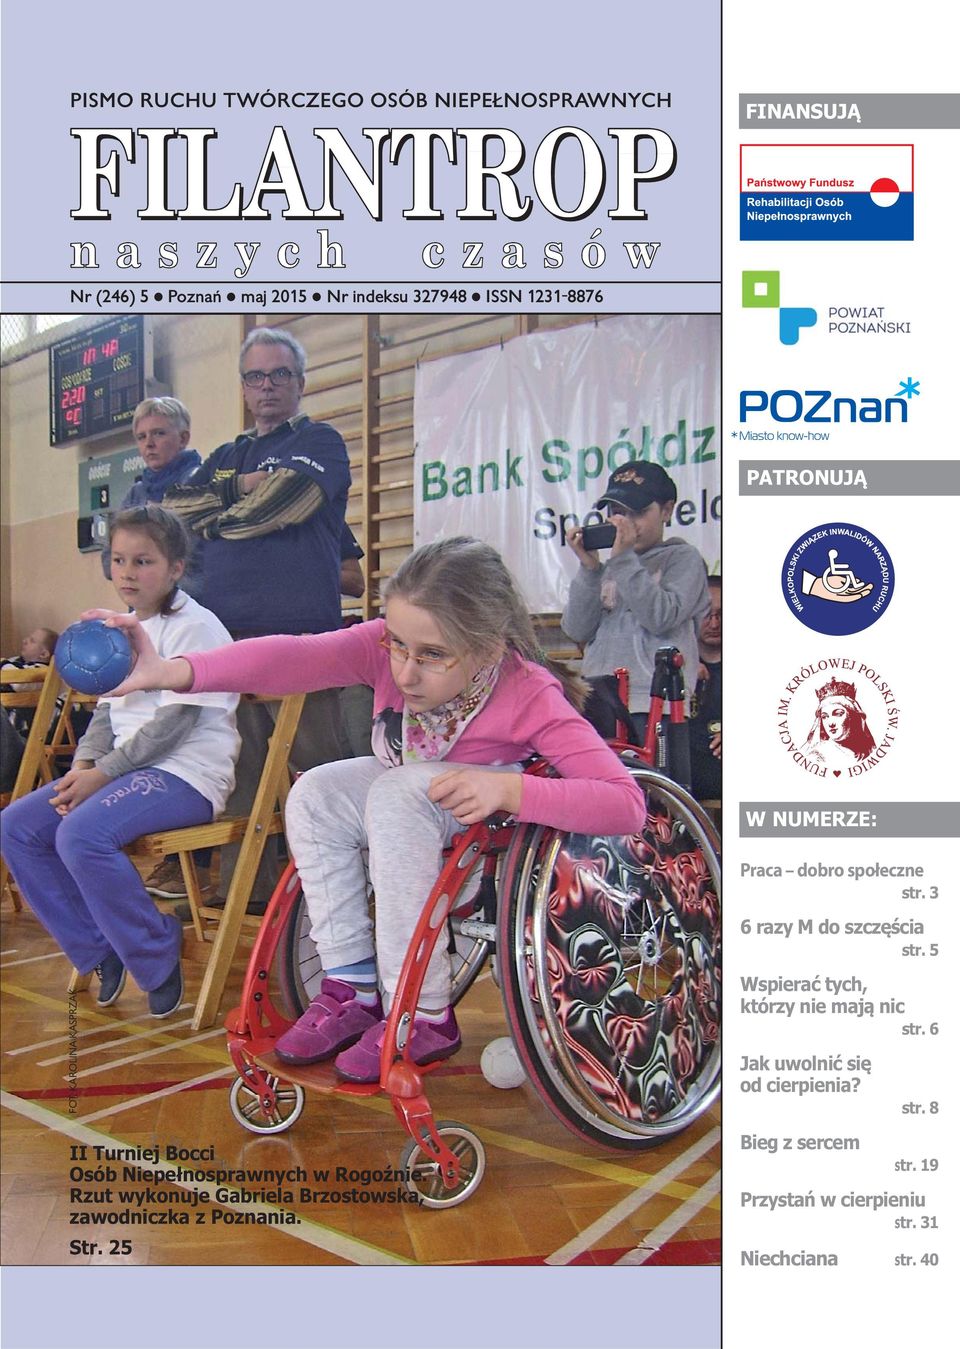 KAROLINA KASPRZAK II Turniej Bocci Osób Niepełnosprawnych w Rogoźnie.